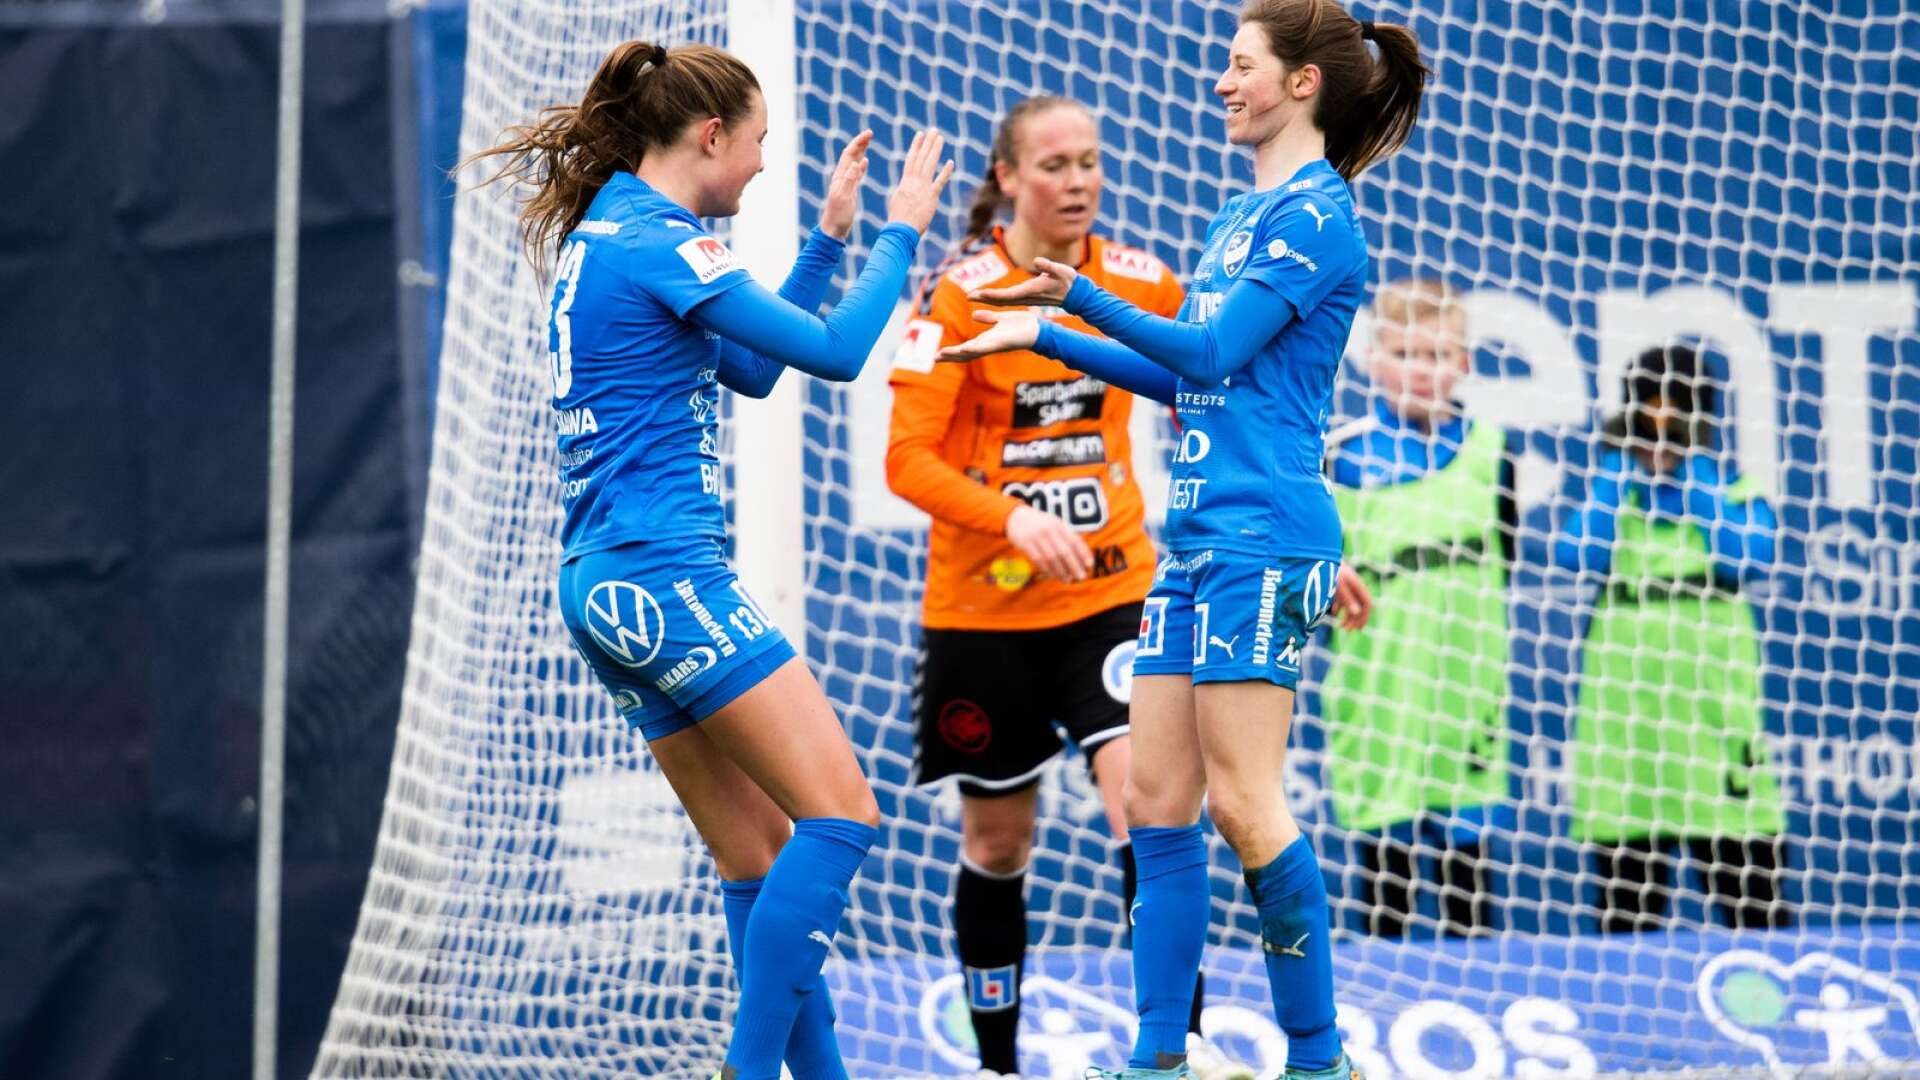 Svea Rehnberg och Charléne Nowotny i IFK Kalmar jublar efter 3–1-målet under fotbollsmatchen i Damallsvenskan mellan Kristianstad och Kalmar den 26 mars 2023 i Kristianstad.